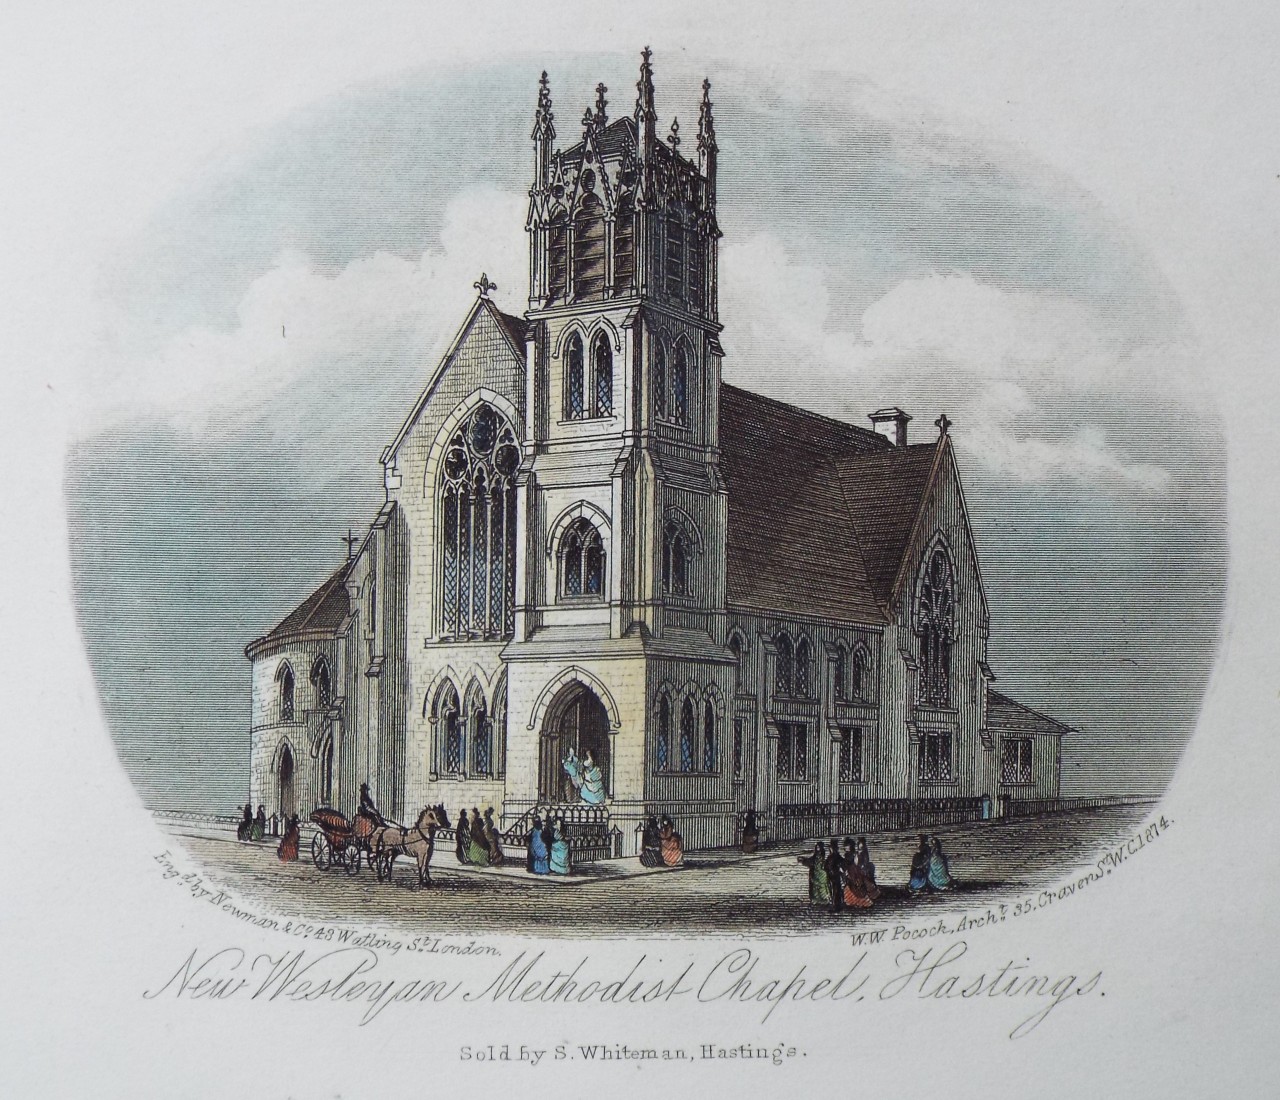 Steel Vignette - New Wesleyan Methodist Chapel, Hastings. - Newman